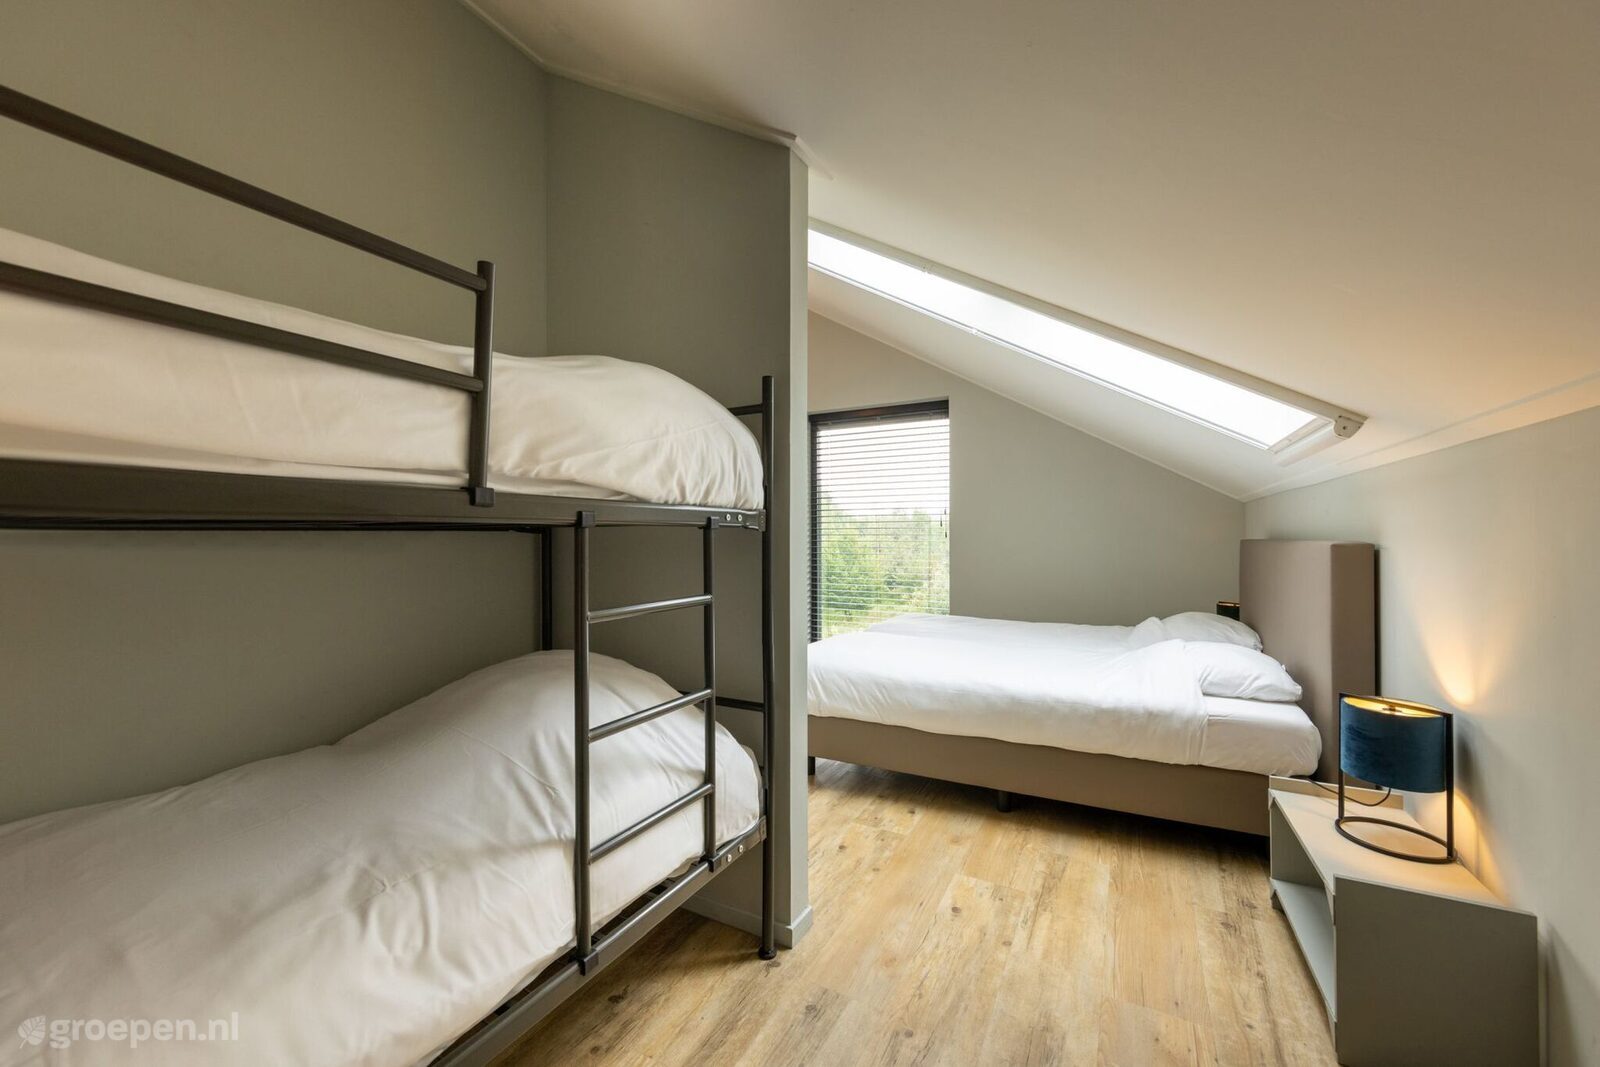 Group accommodation Aalten